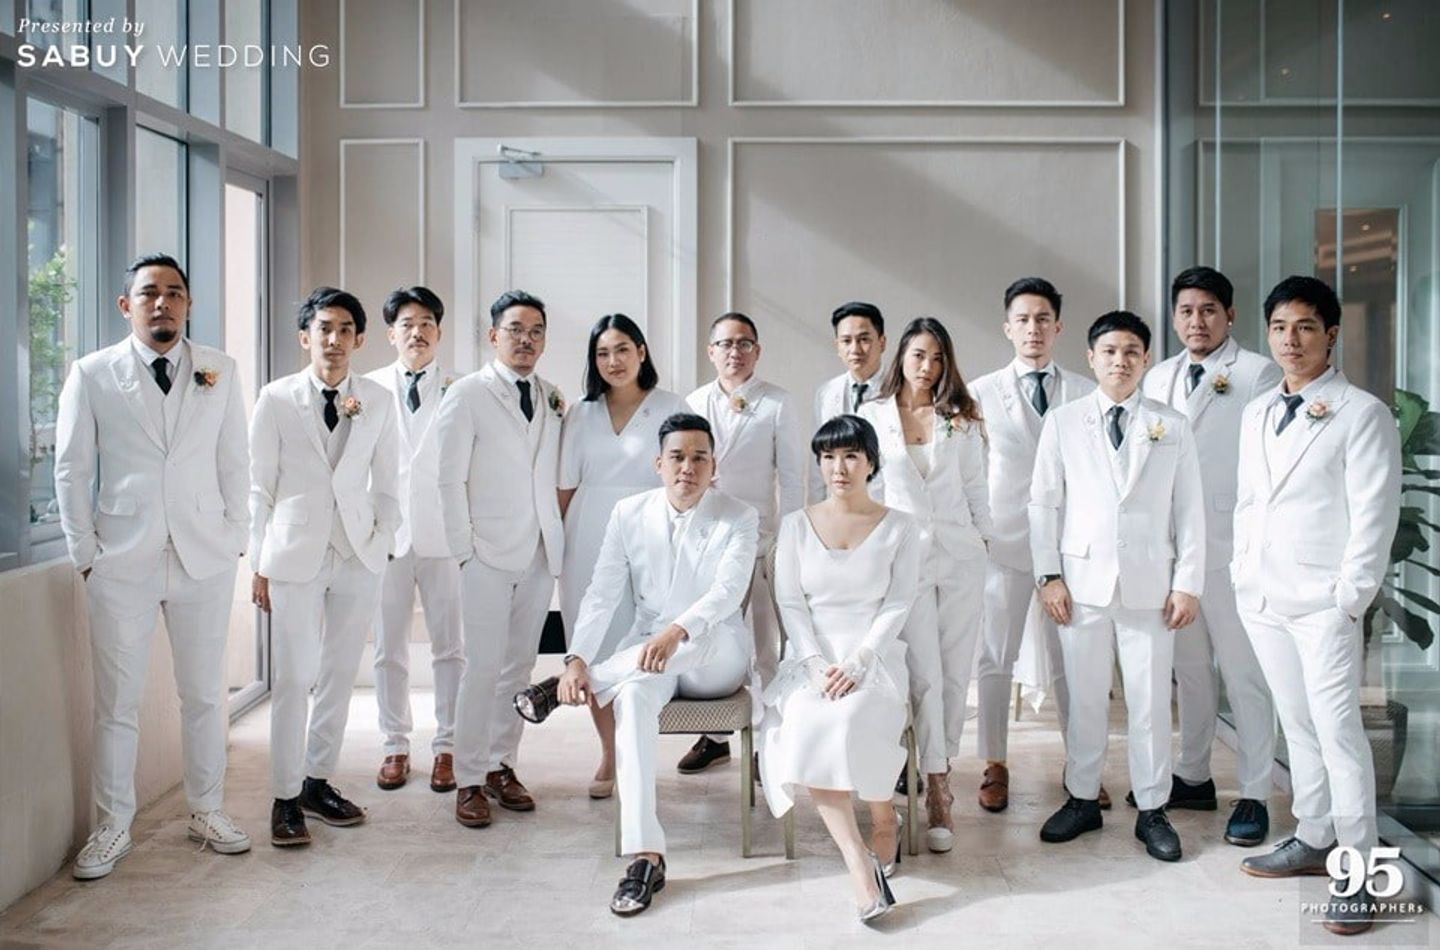 รีวิวงานแต่งสีขาวสุดปัง สวยเรียบแต่มีพลังของคู่รักนักดีไซน์ @Oriental  residence bangkok